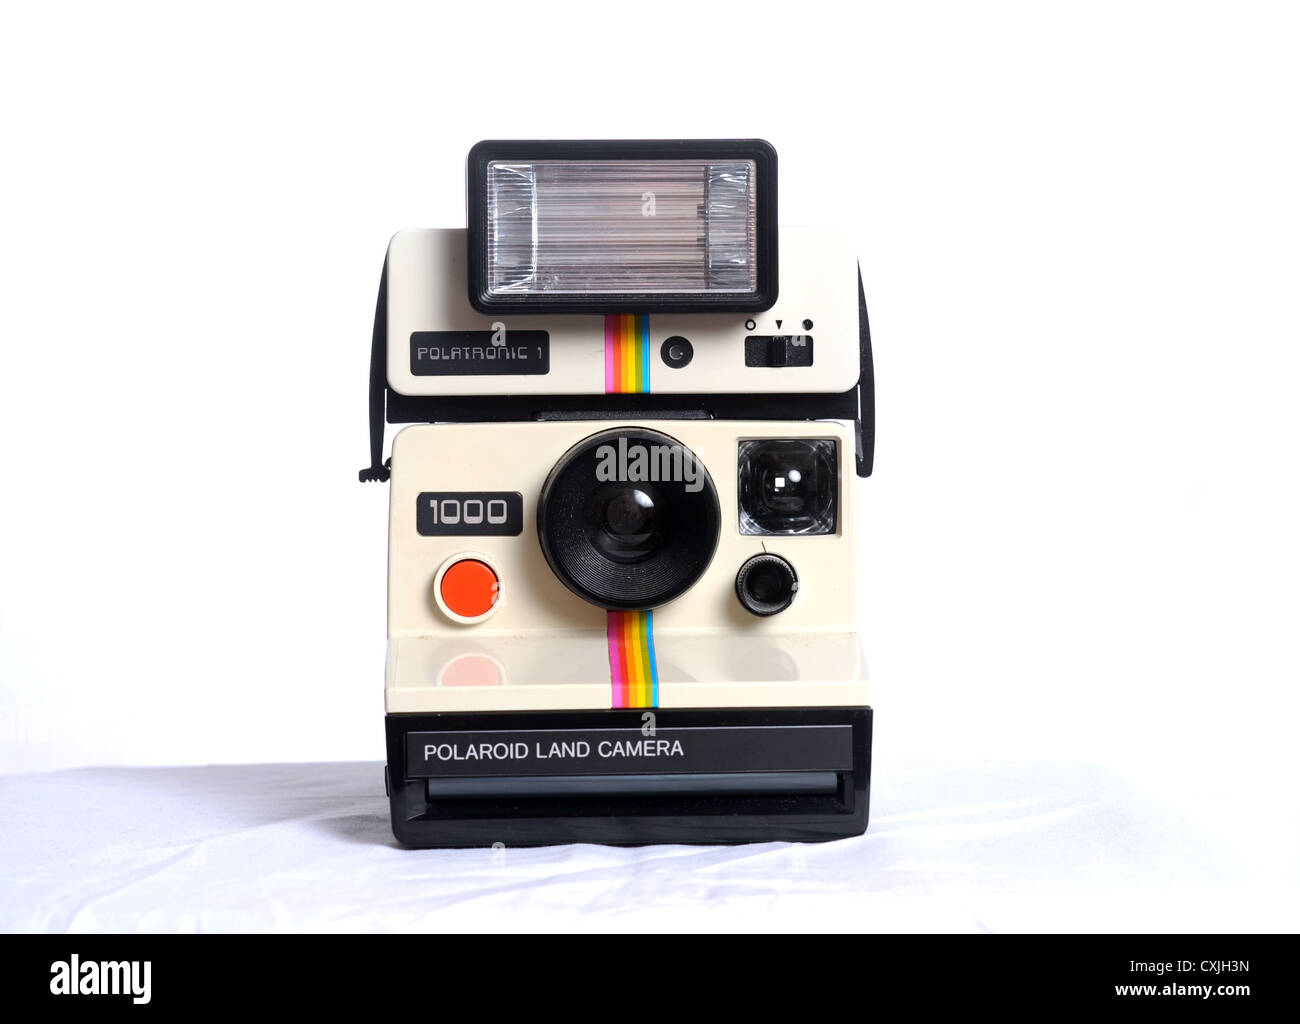 Old Polaroid Land Camera 1000 UK Stock Photo - Alamy